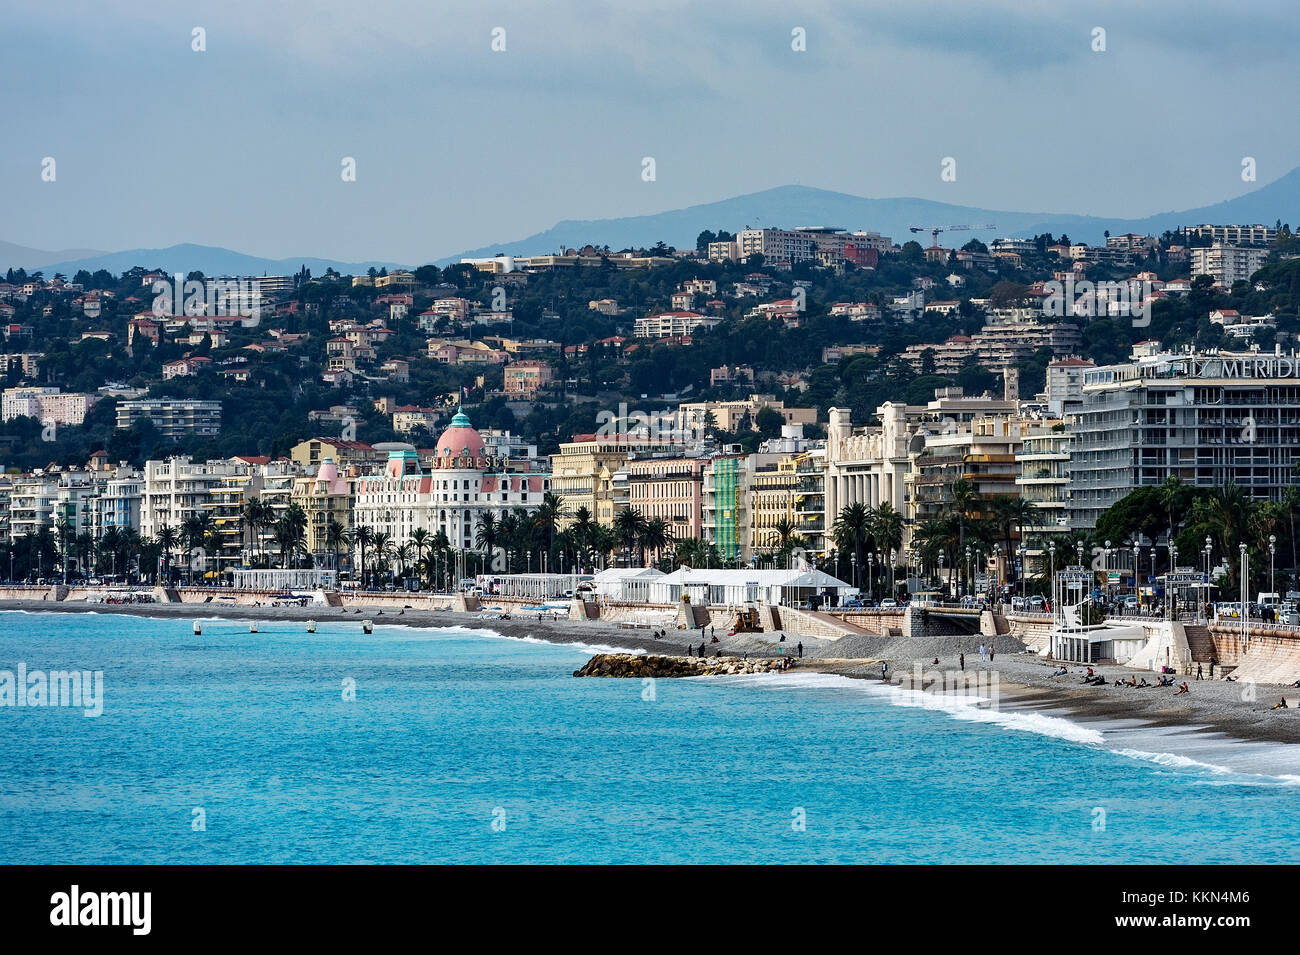 Quai de Etats-Unis, Nizza, Côte d'Azur, Côte d'Azur, Frankreich, Europa. Stockfoto